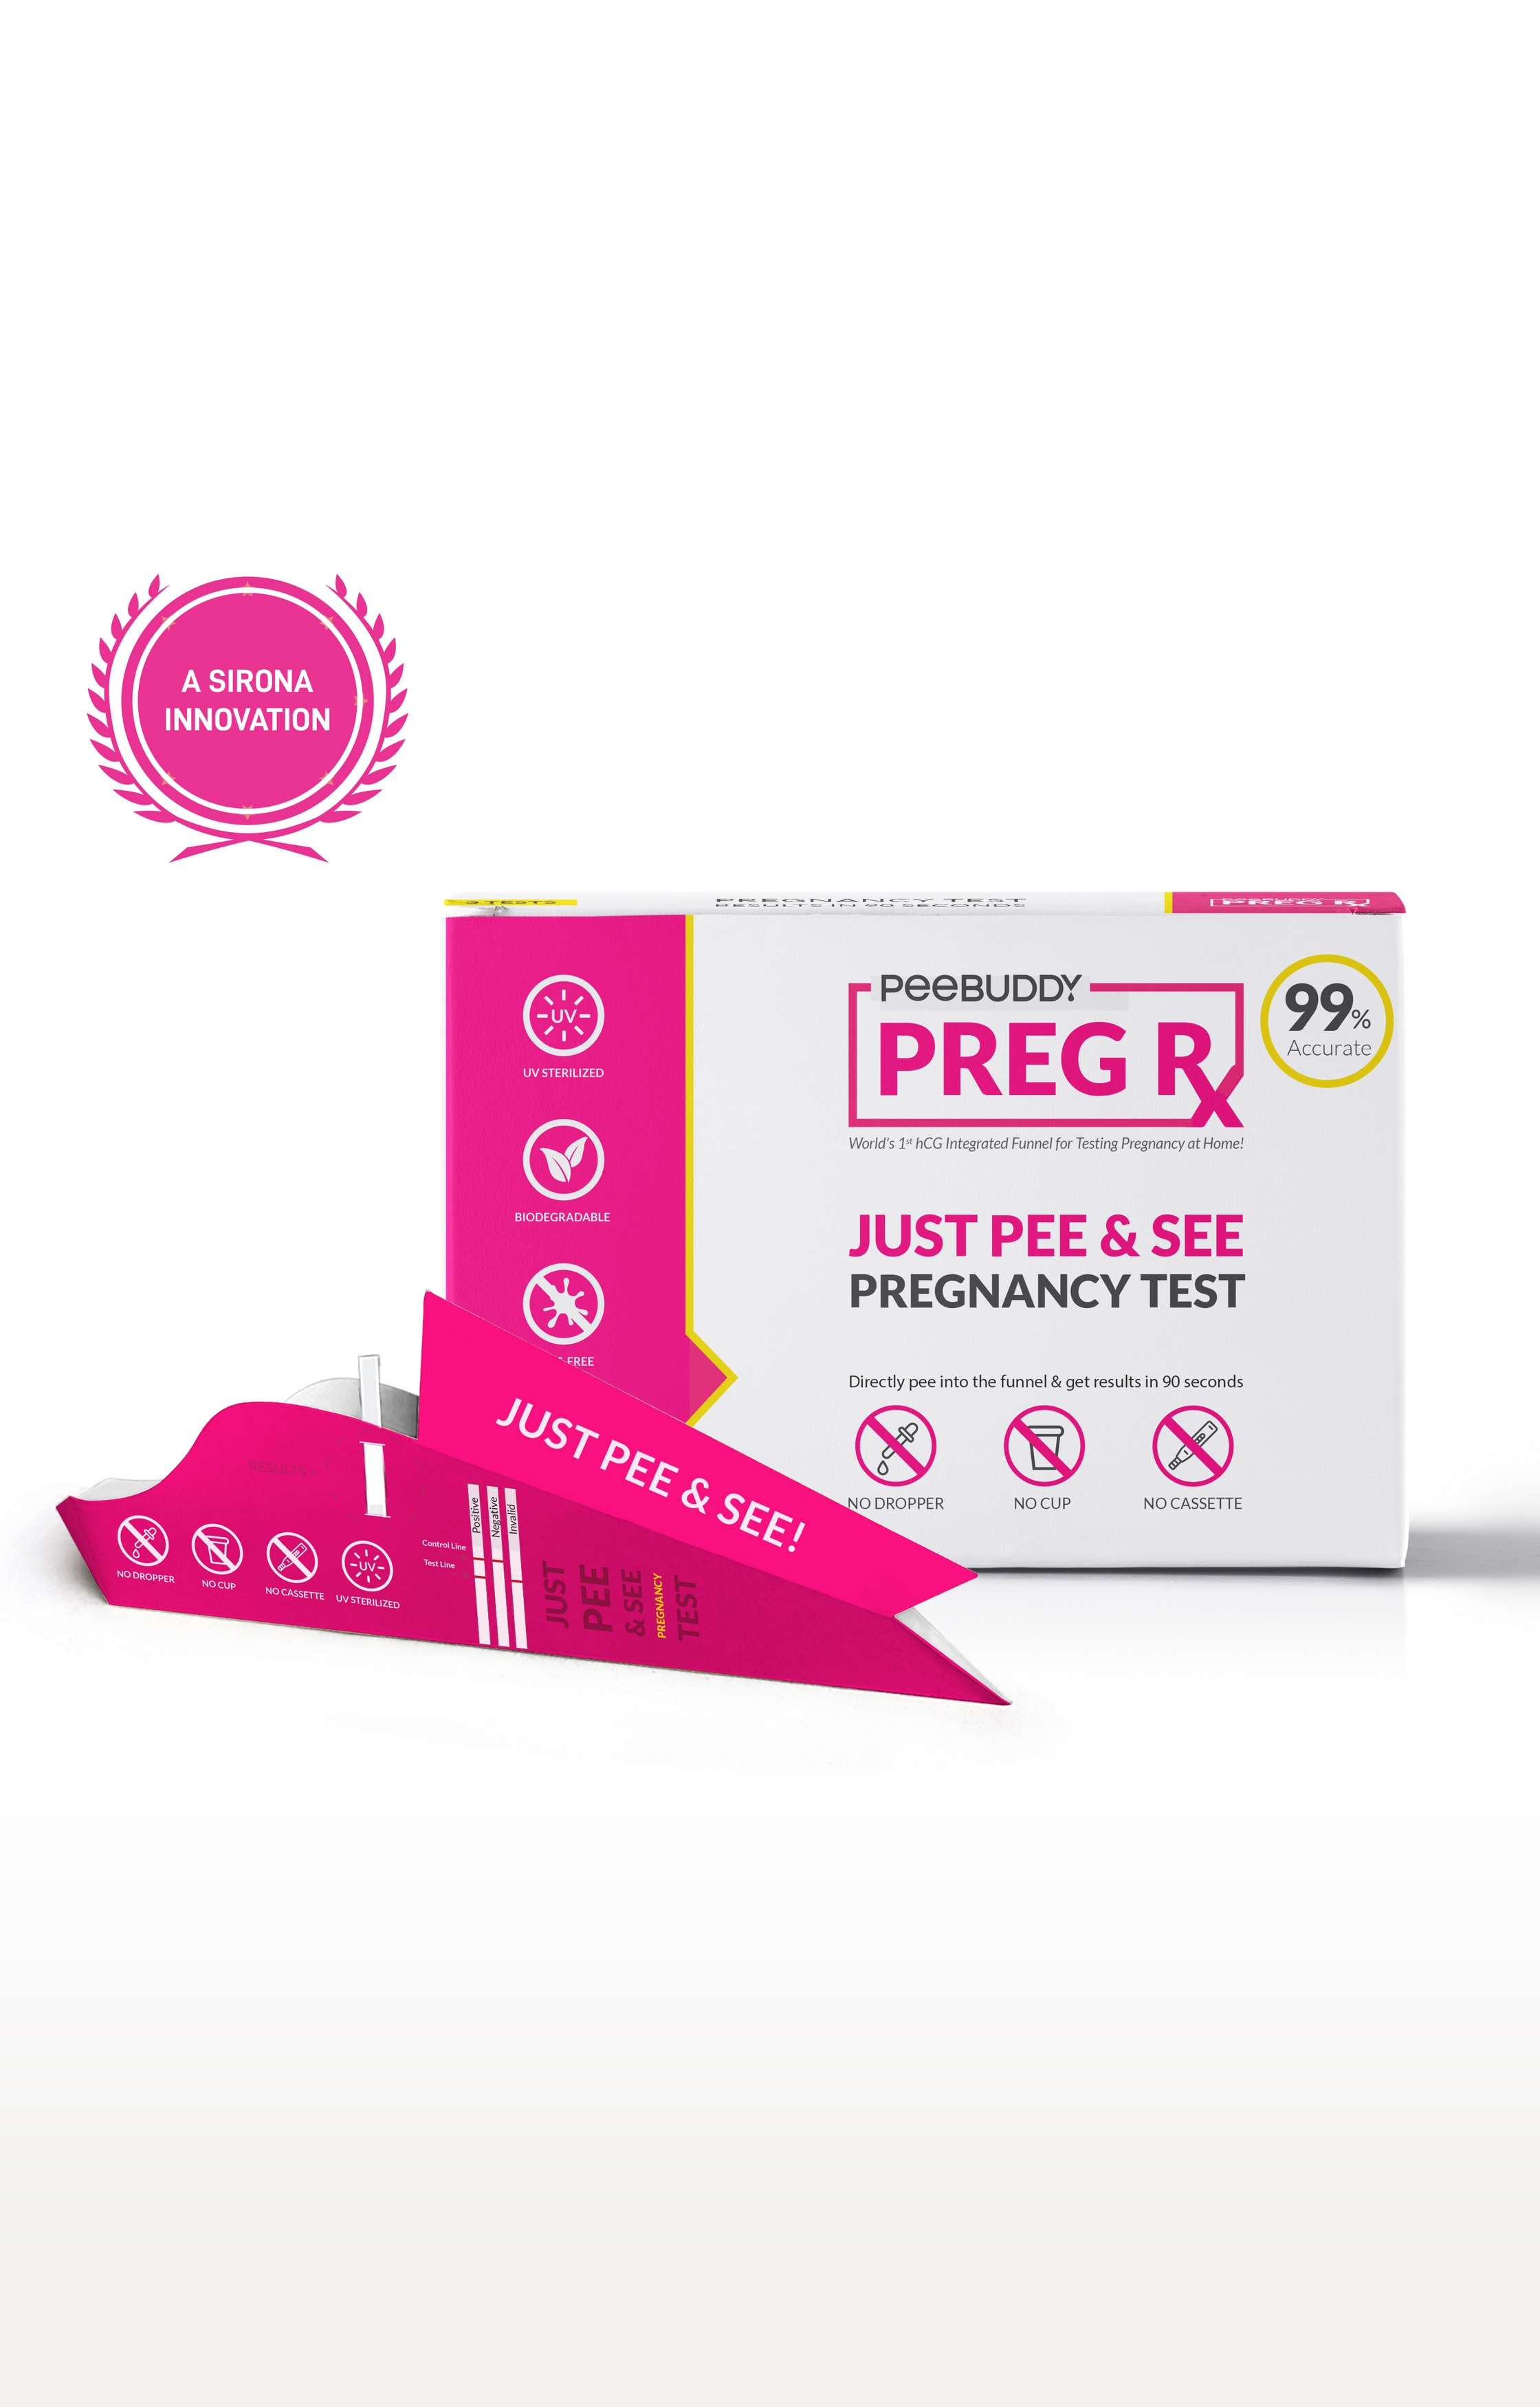 Peebuddy Pregrx Pregnancy Test Strips In Funnel - 1 Funnels